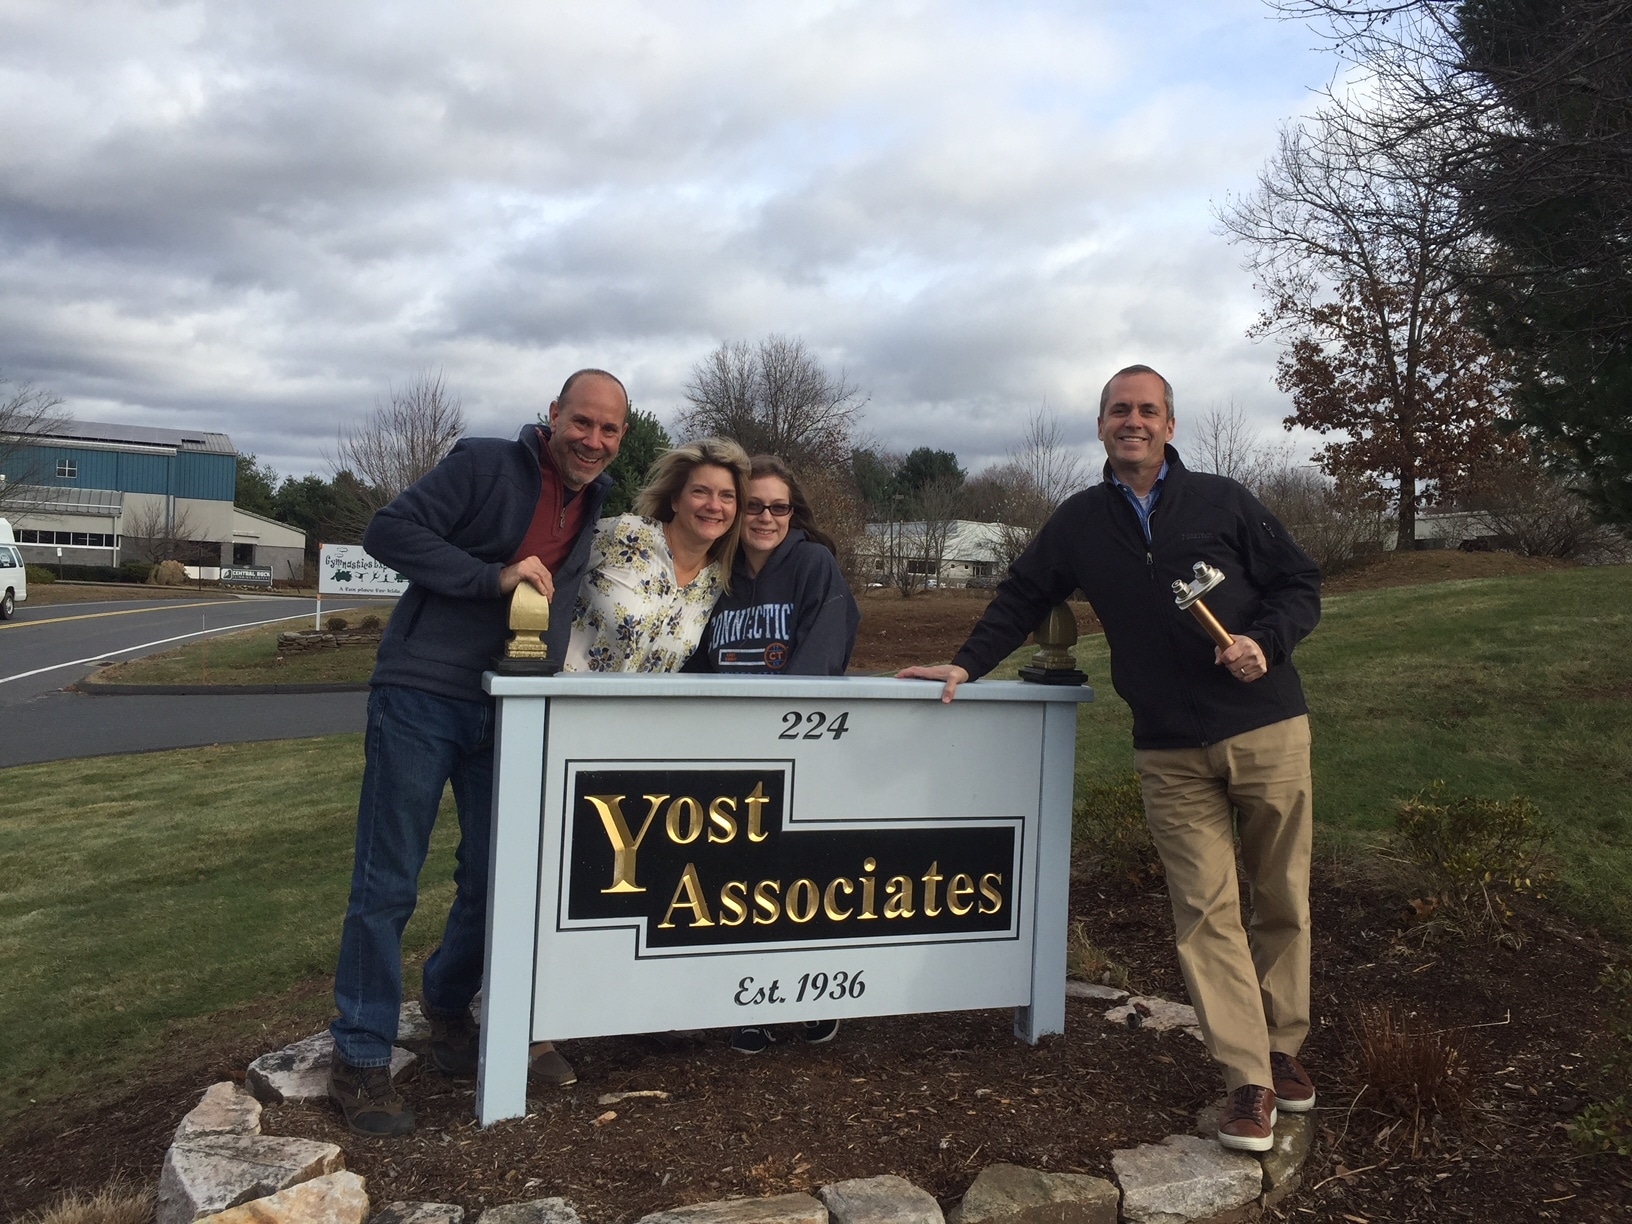 PRIER Announces New Representative Yost Associates